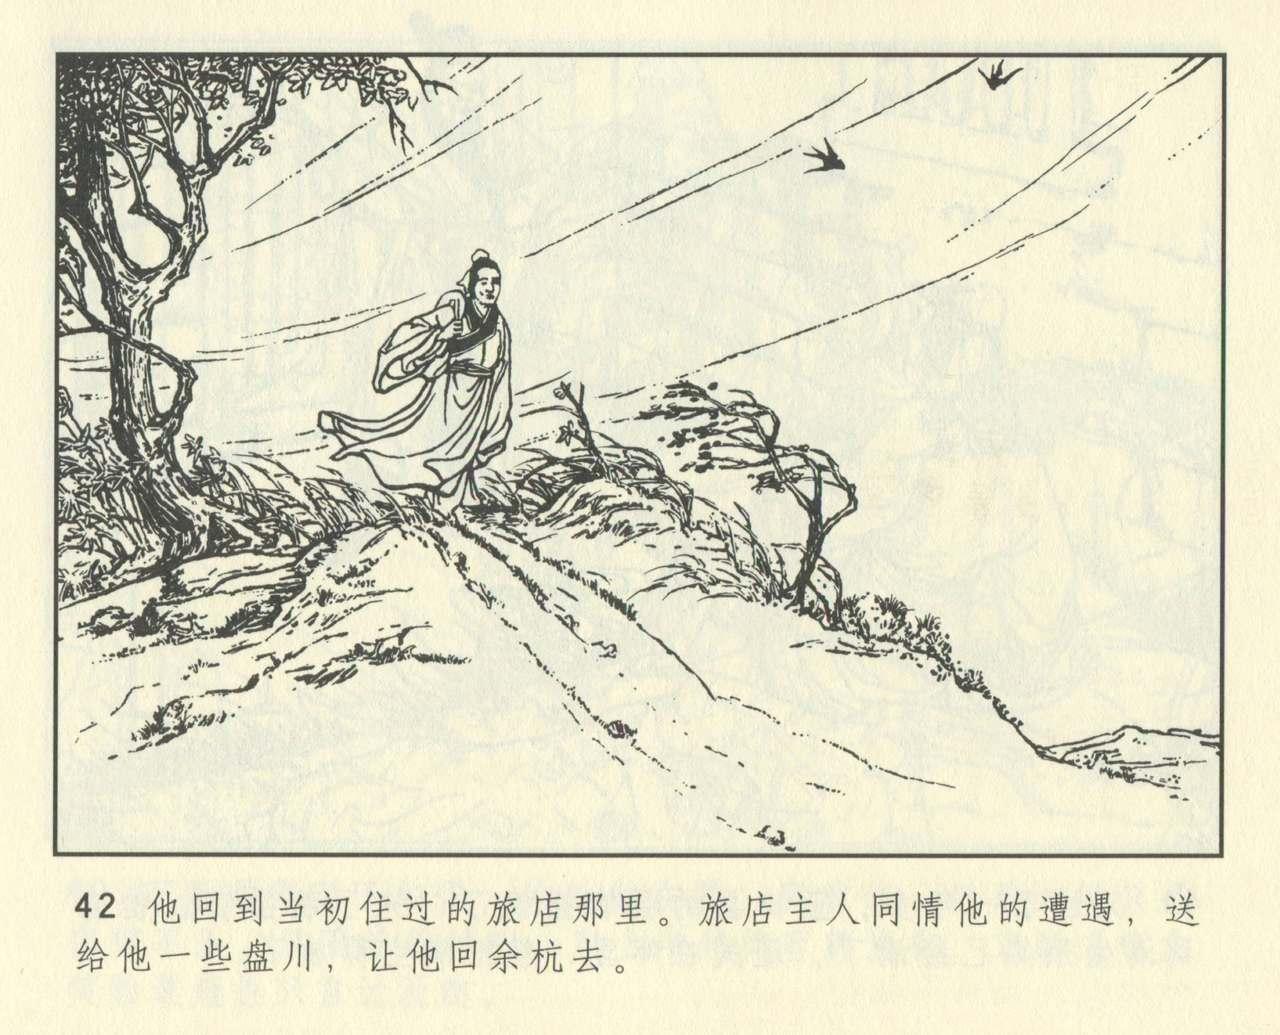 聊斋志异 张玮等绘 天津人民美术出版社 卷二十一 ~ 三十 453